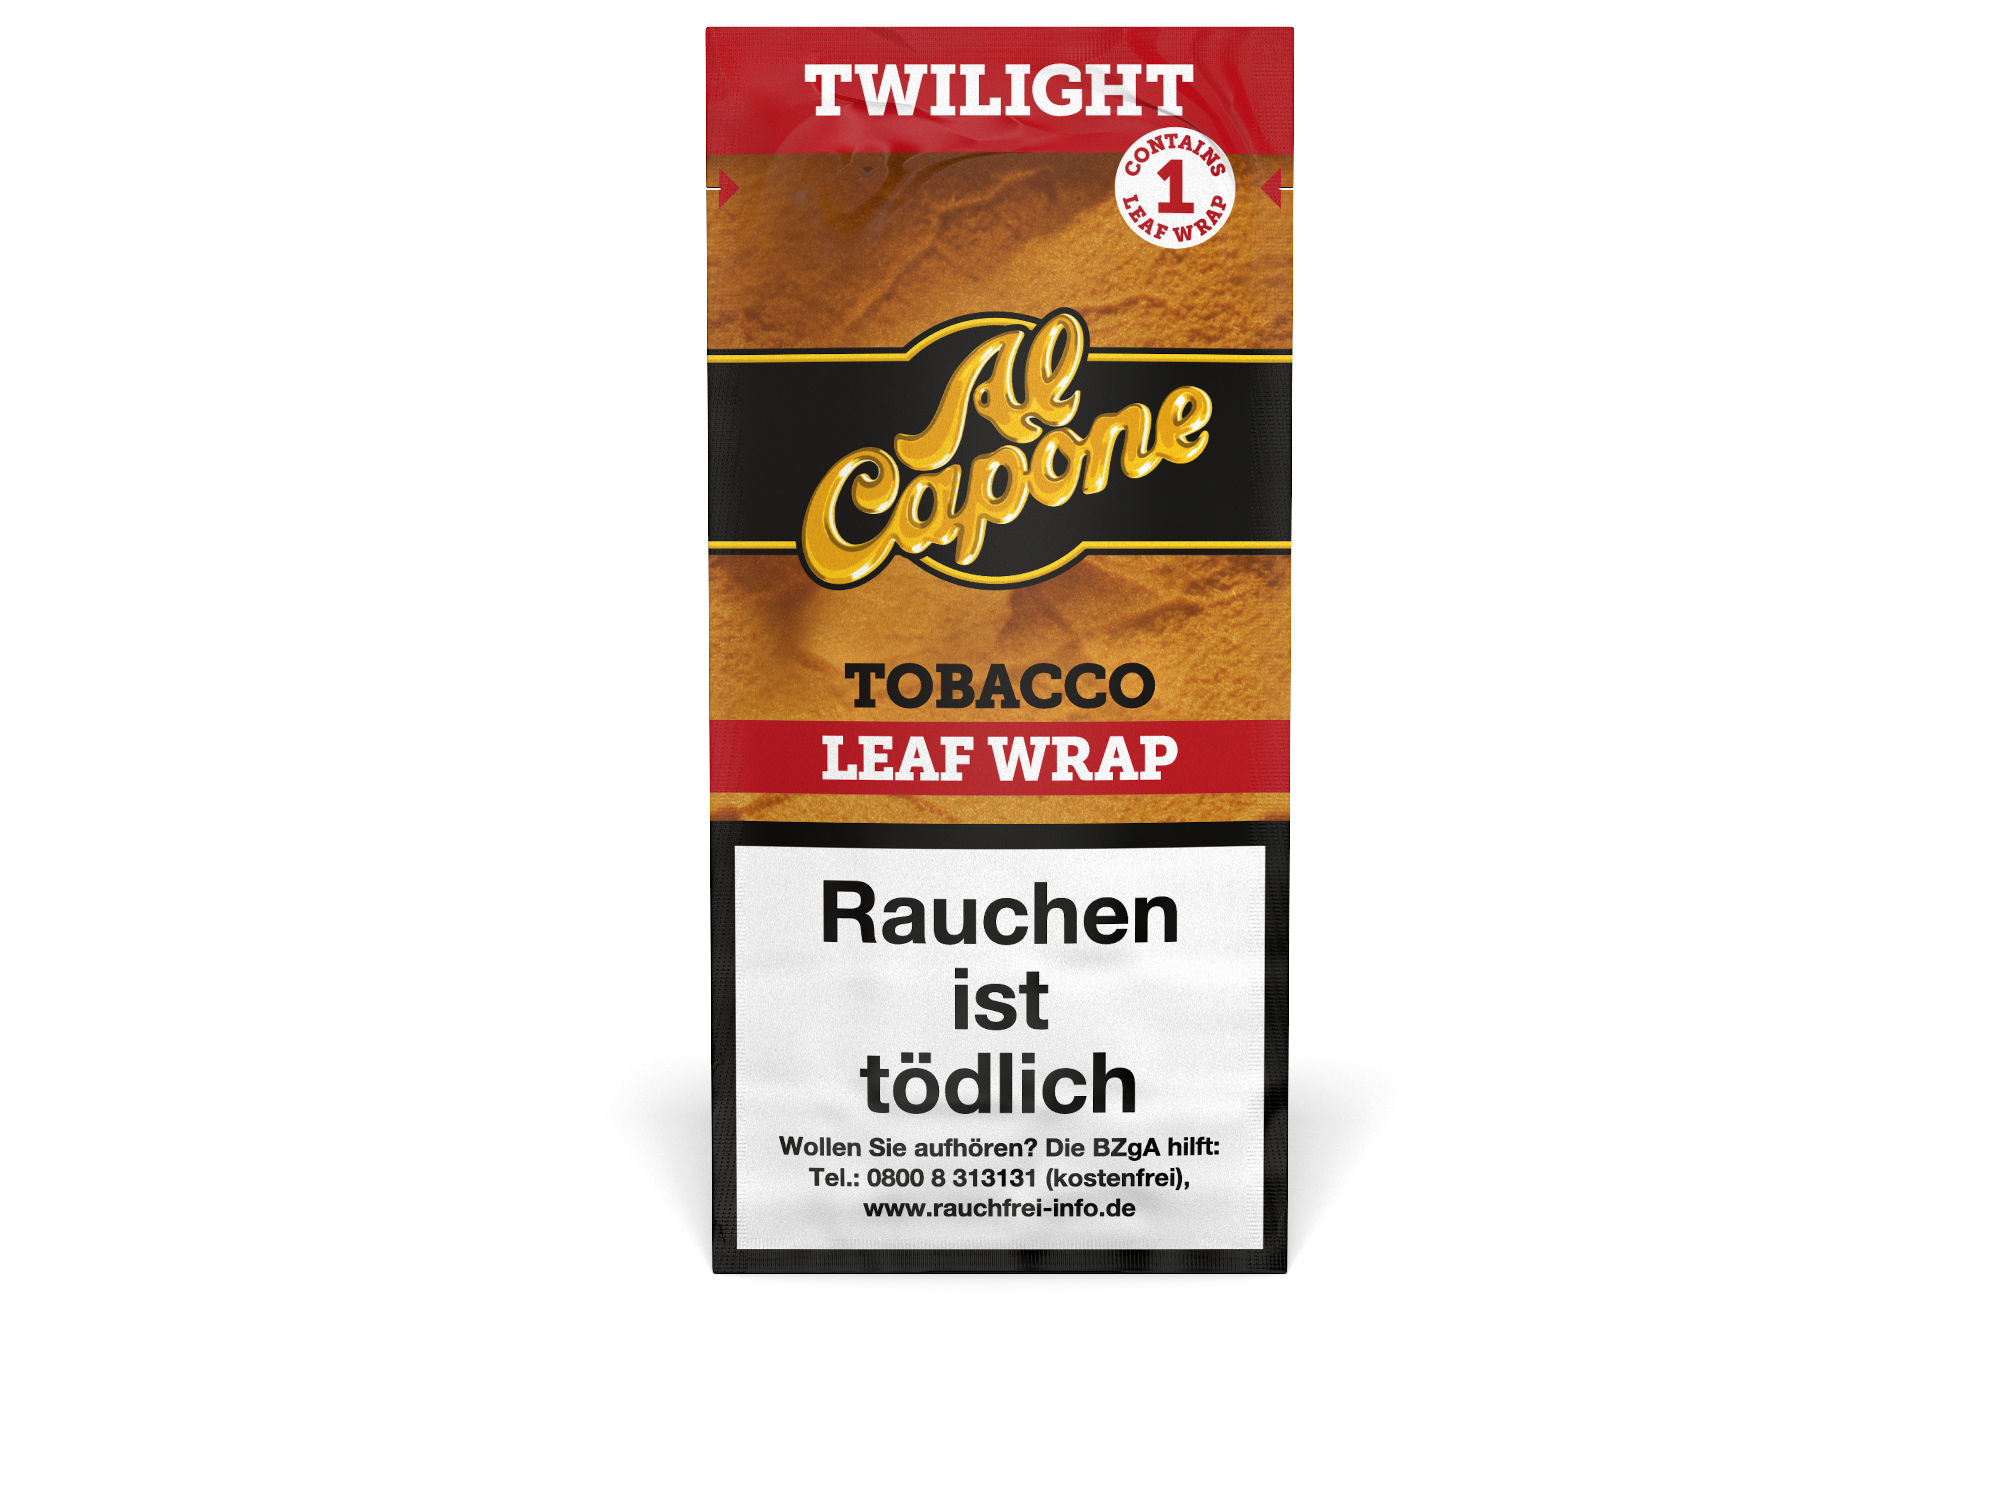 Al Capone Twilight Leaf Wrap